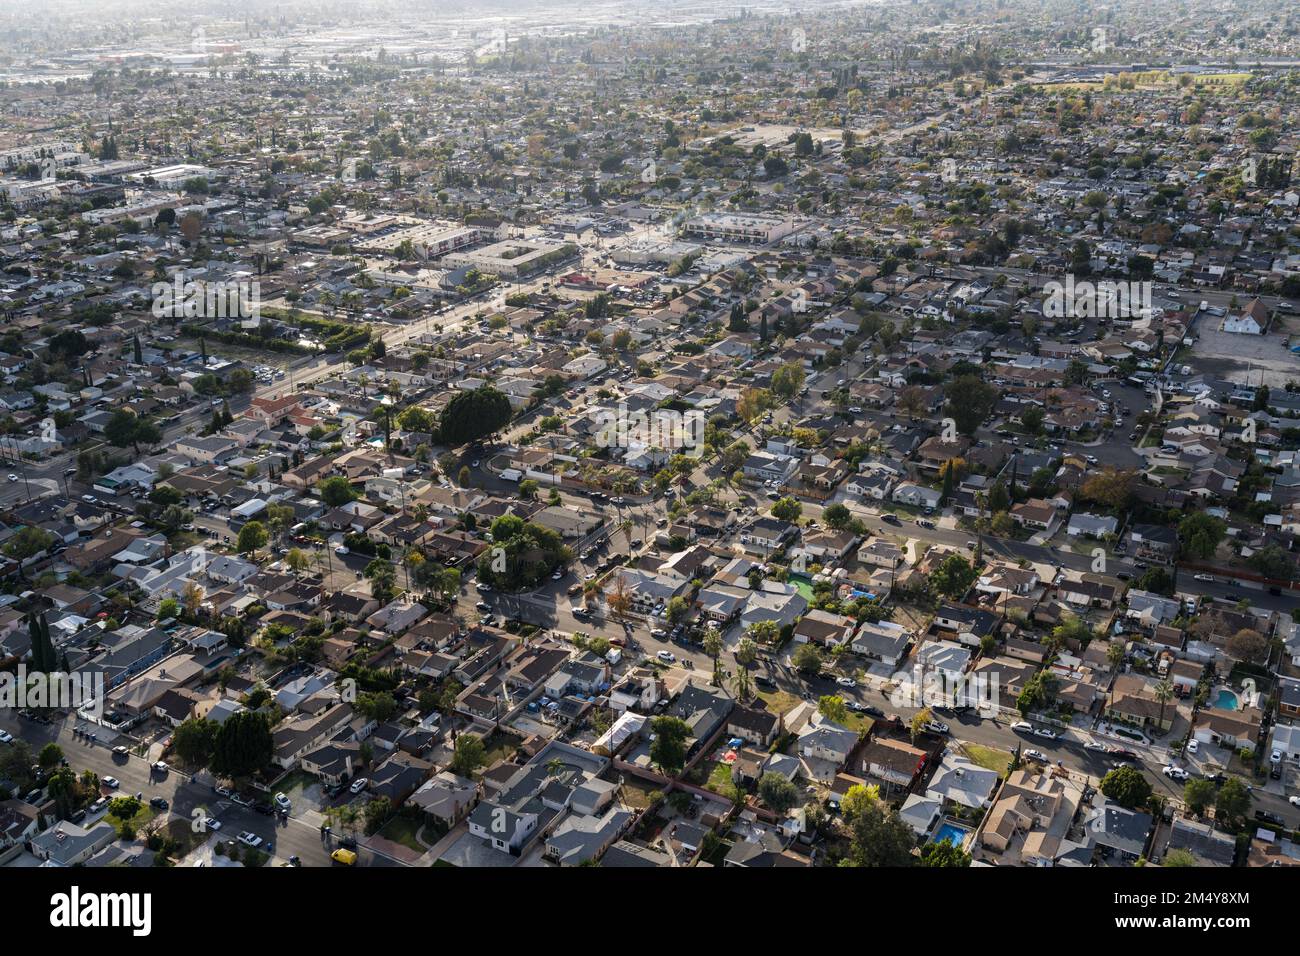 Vue aérienne de la région nord-est de la vallée de San Fernando à Los Angeles, Californie. Banque D'Images